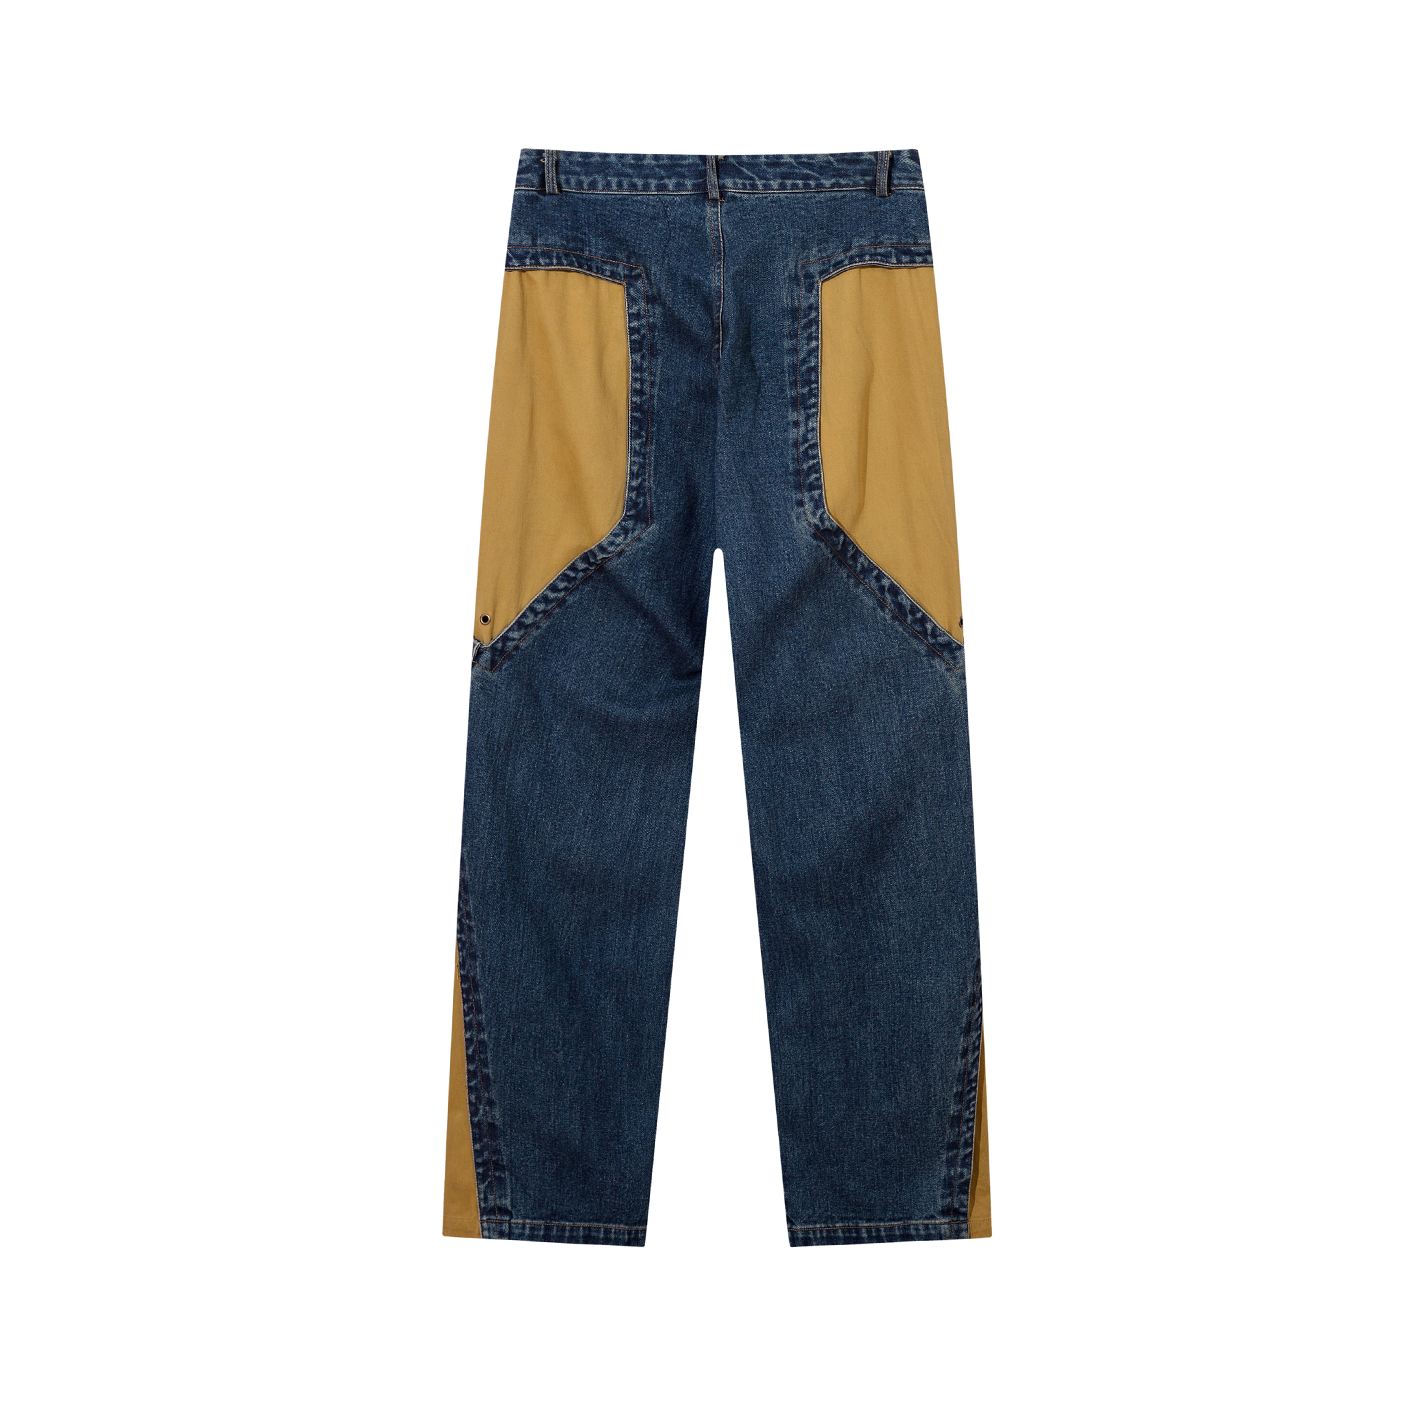 Patchwork Contrasting Design Zip Slit Long Jeans EA7004